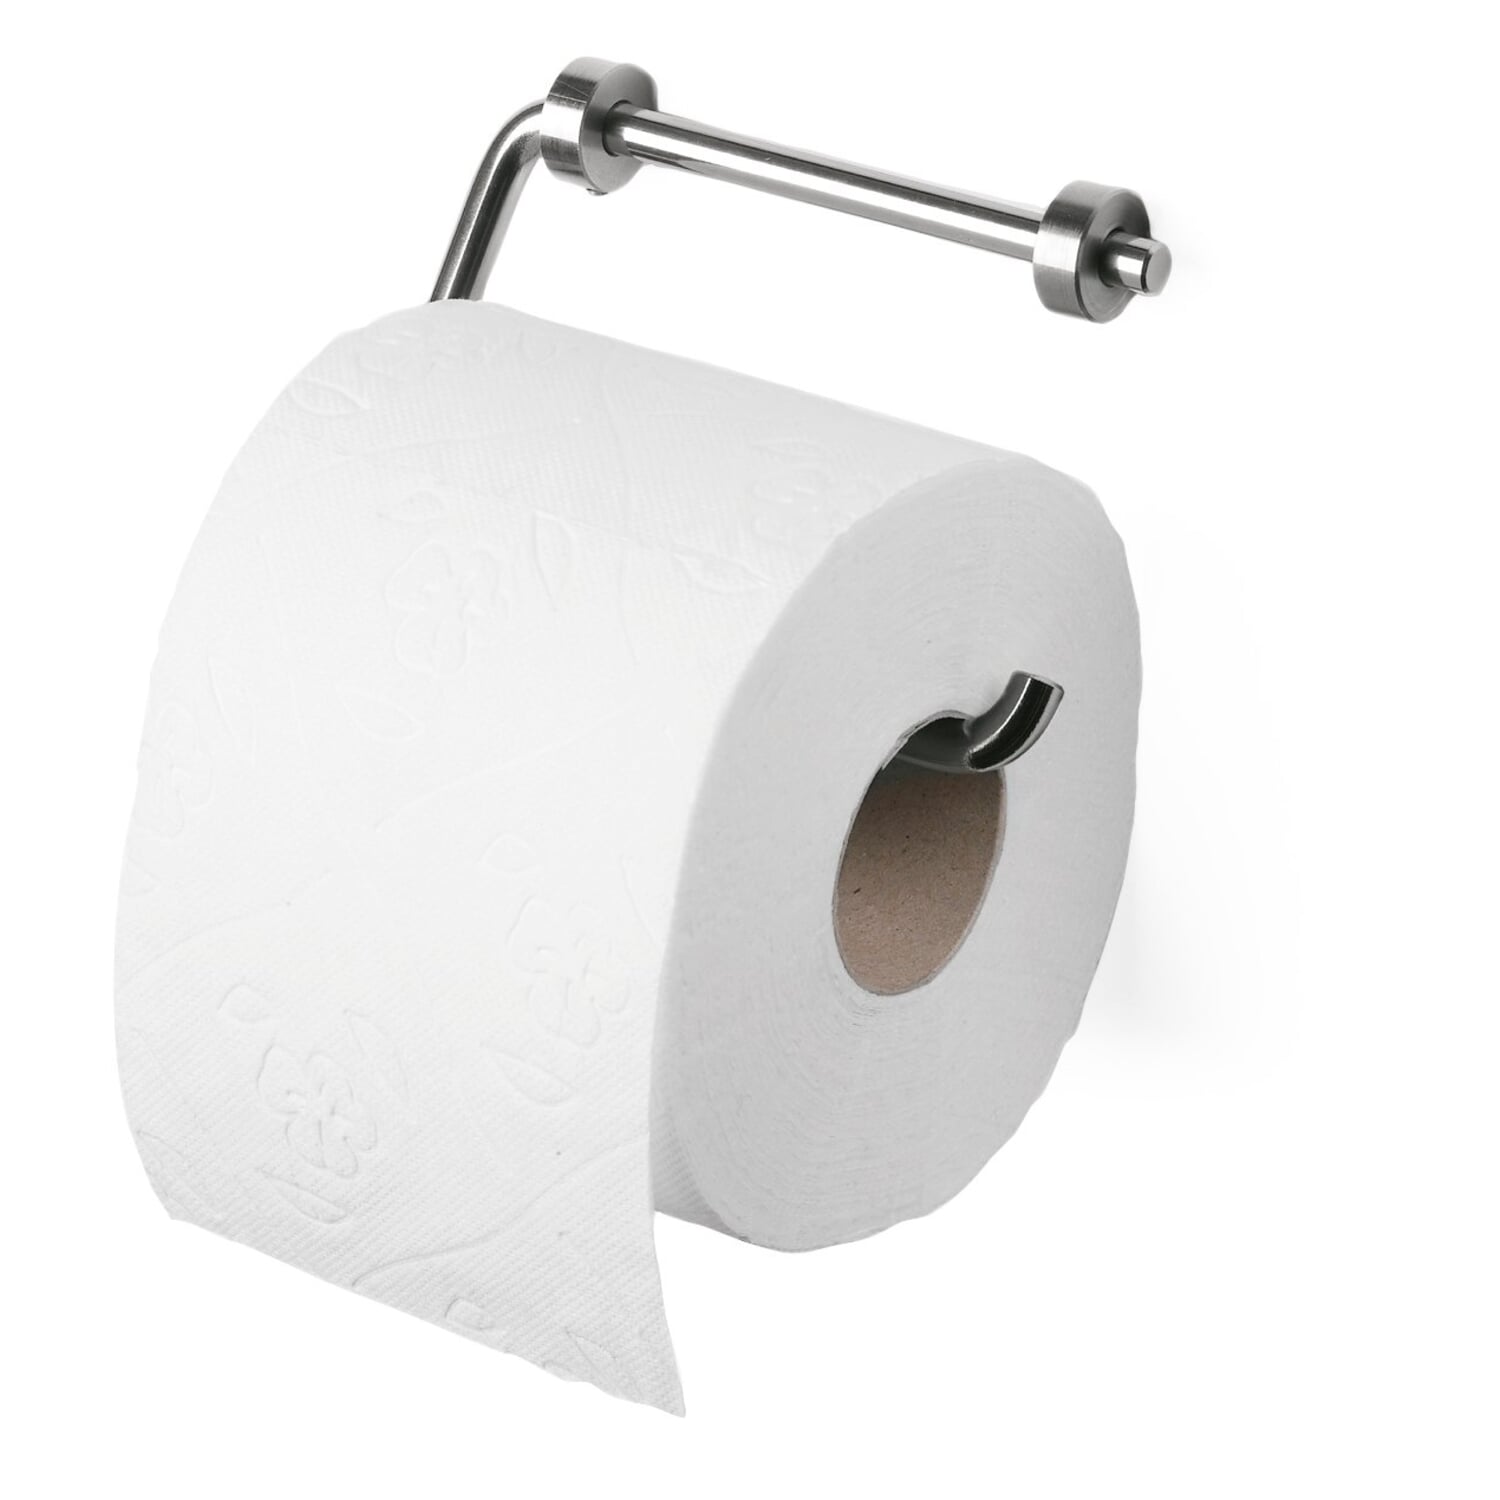 stainless-steel-toilet-paper-holder.jpg